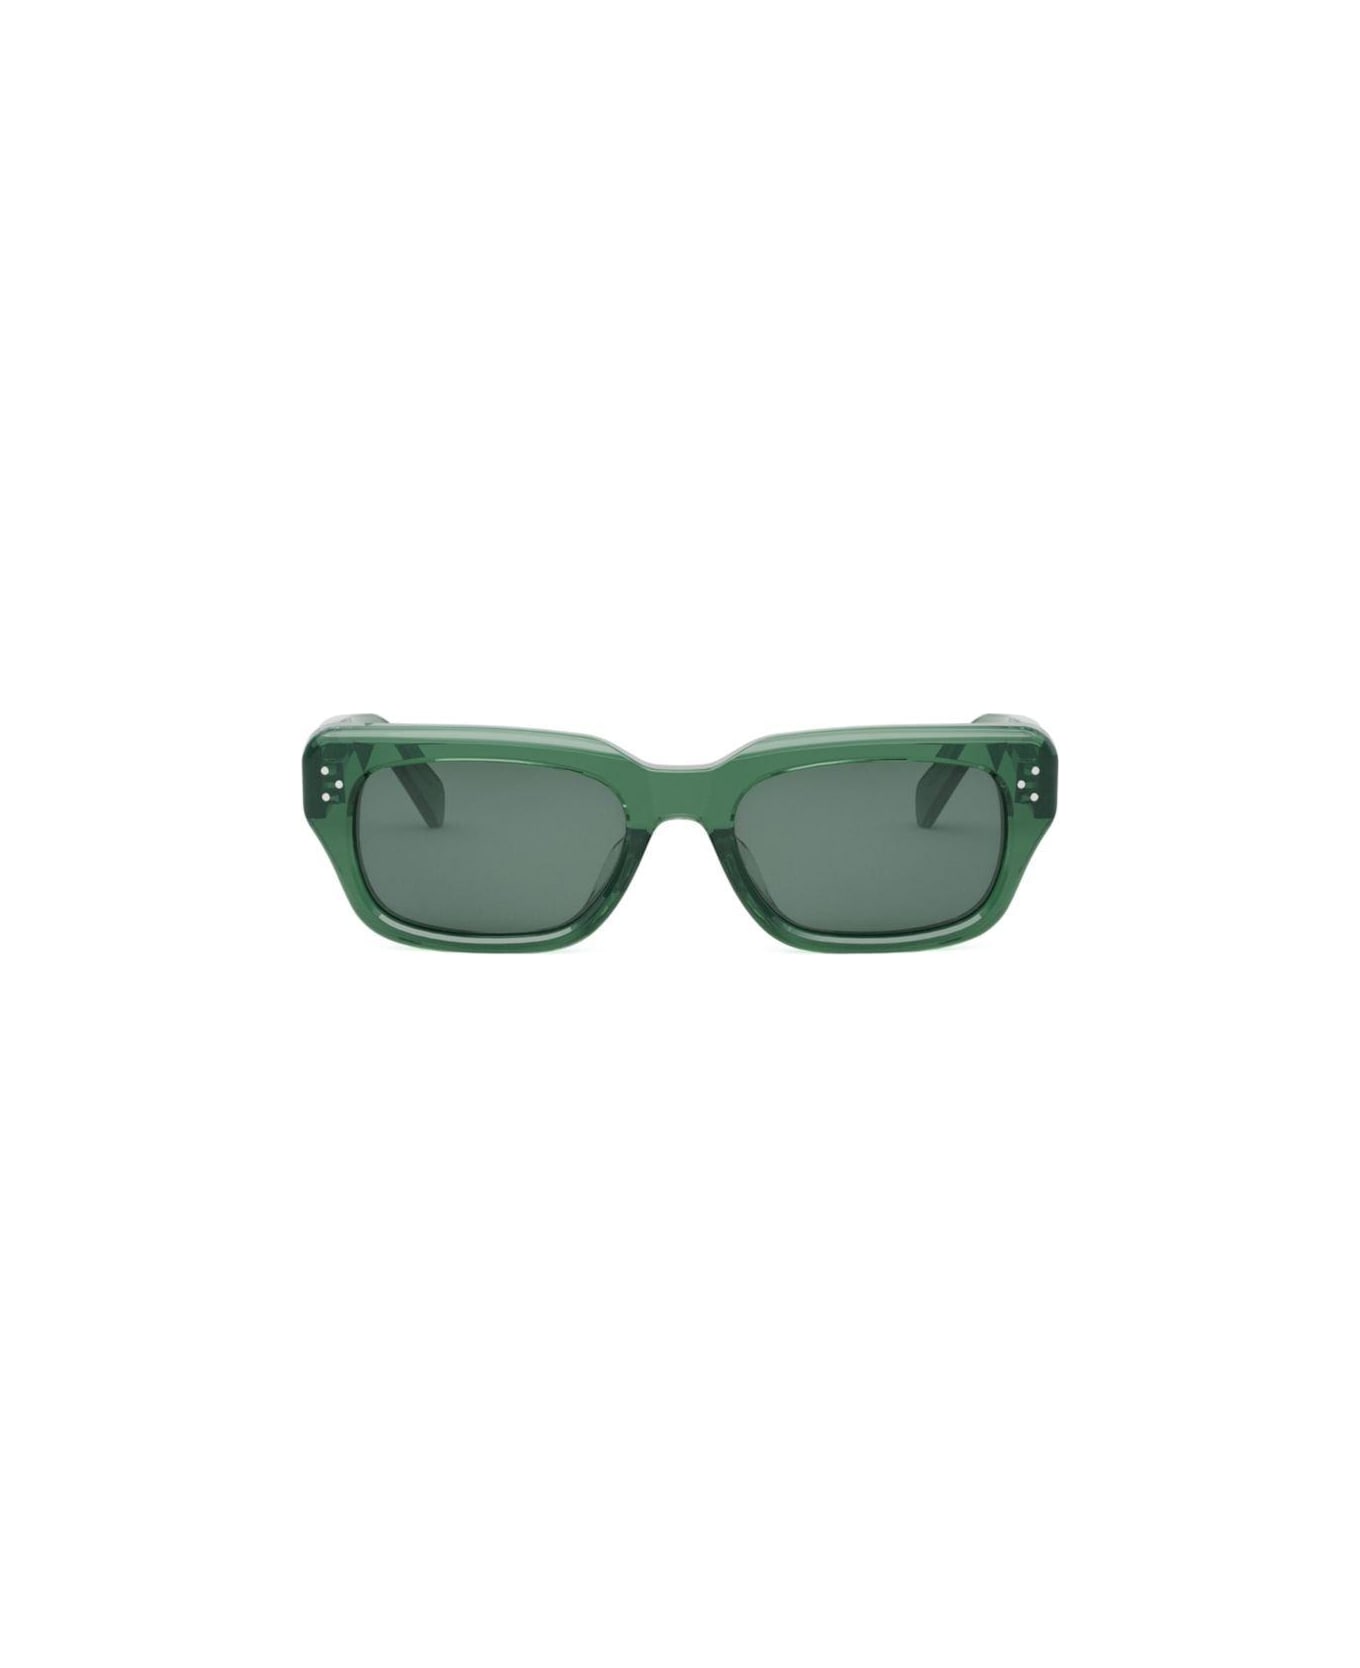 Celine Rectangle Frame Sunglasses - 96n サングラス